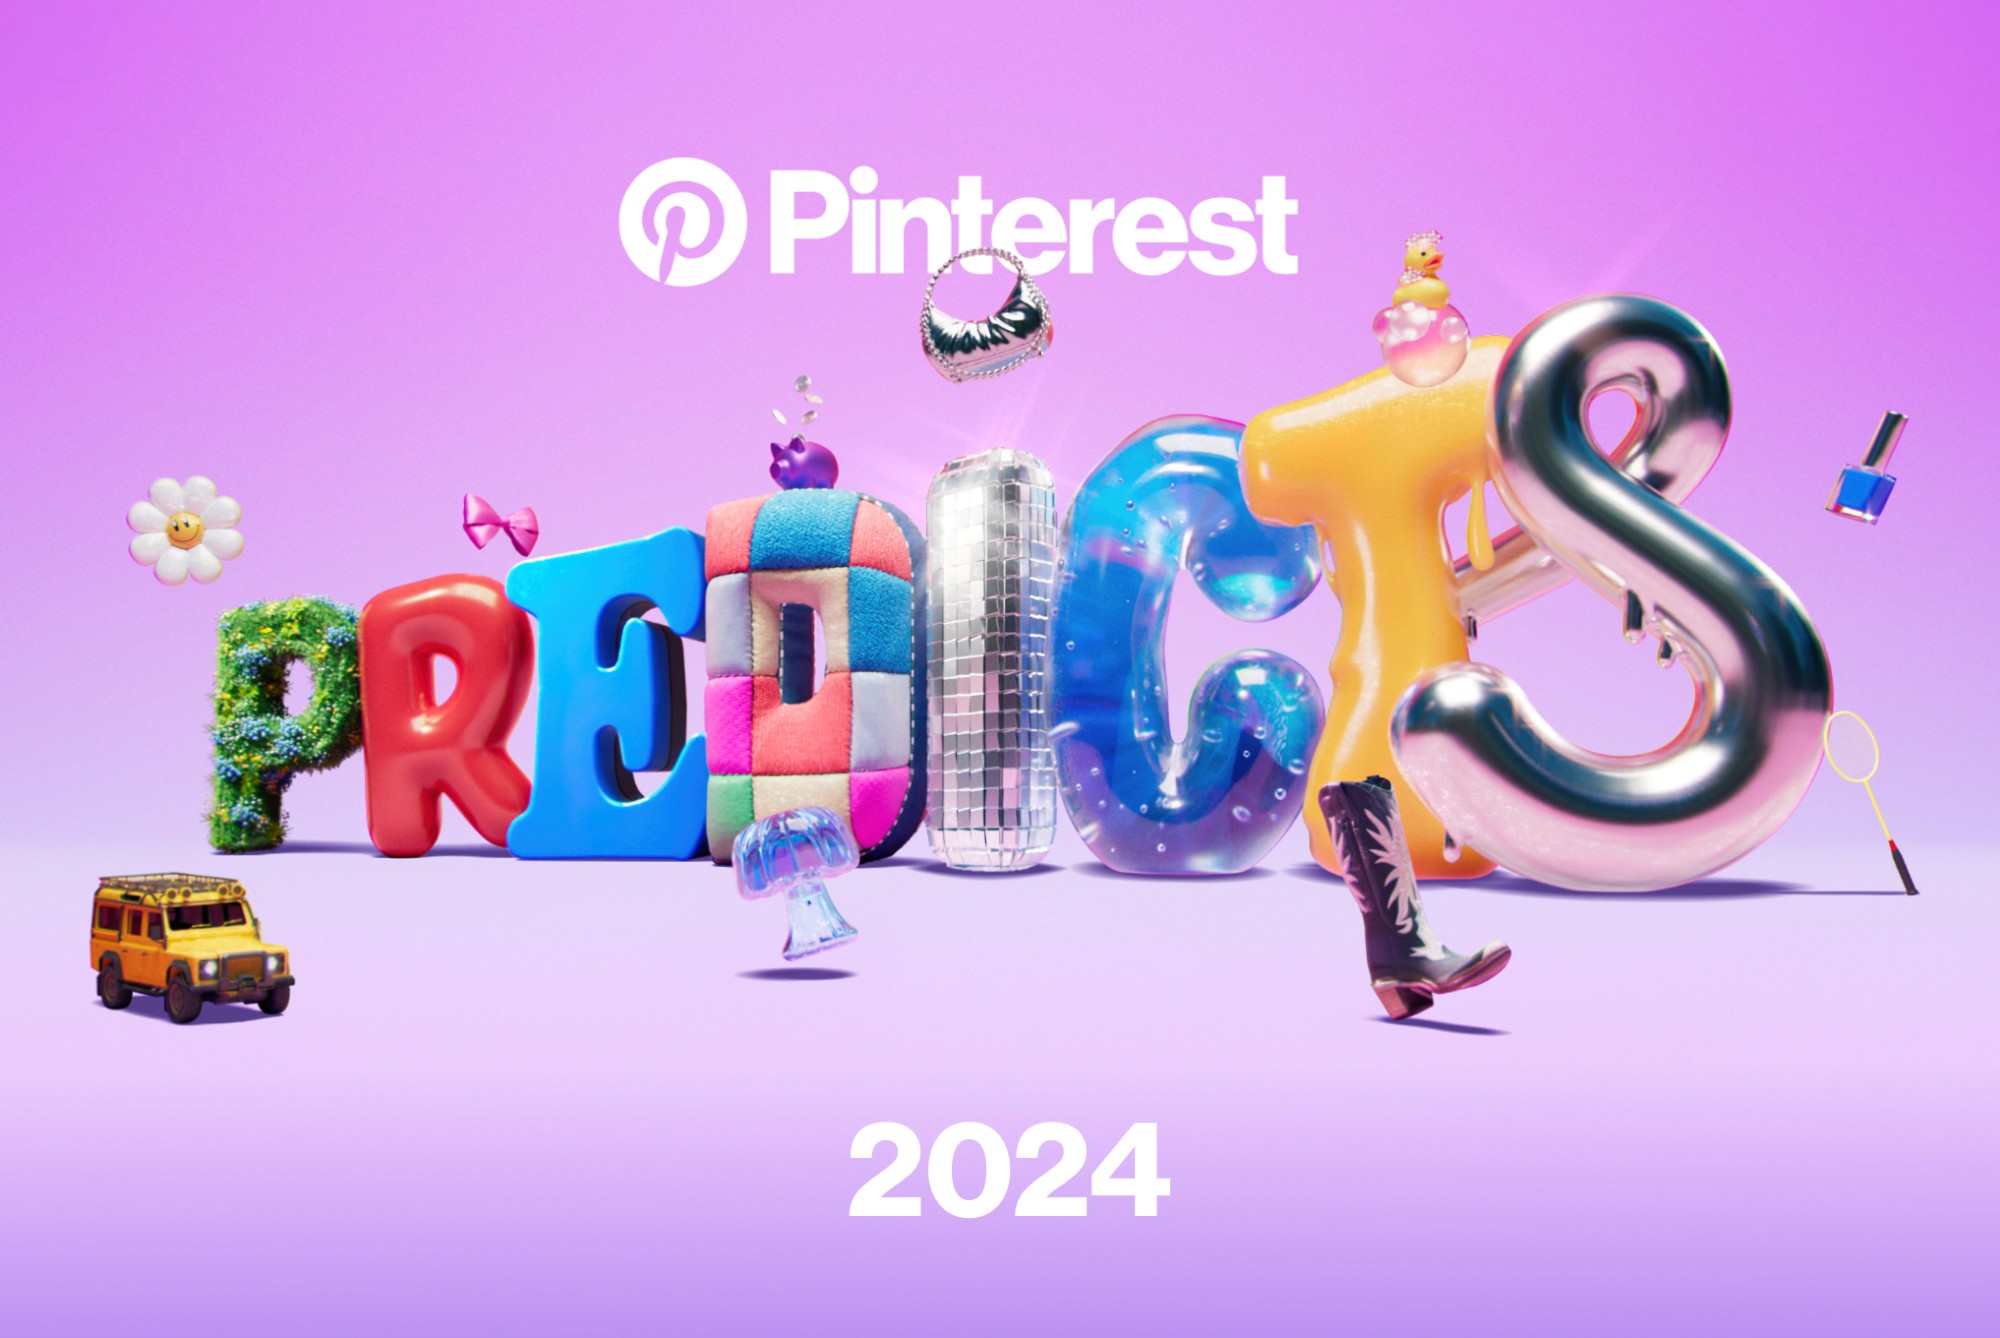 Analiza Pinterest Predicts 2024 y crea una estrategia de marketing ganadora.